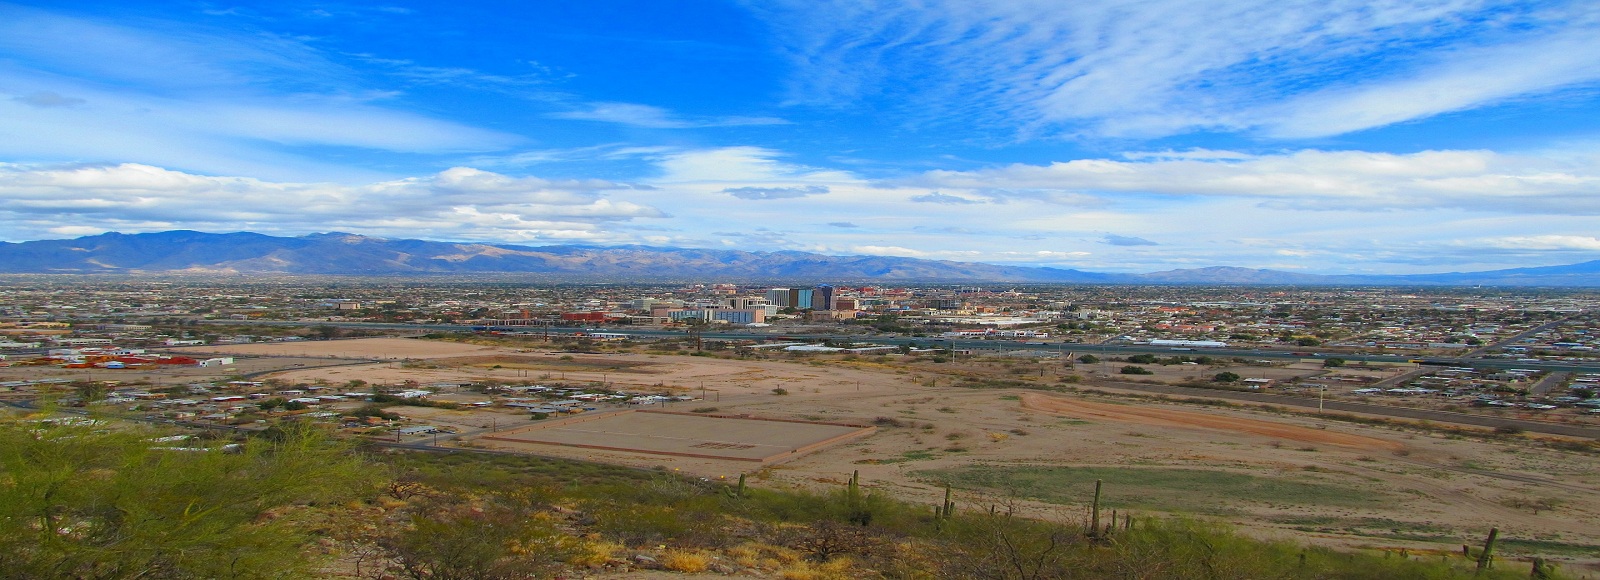 Ofertas de Traslados en Tucson. Traslados económicos en Tucson 